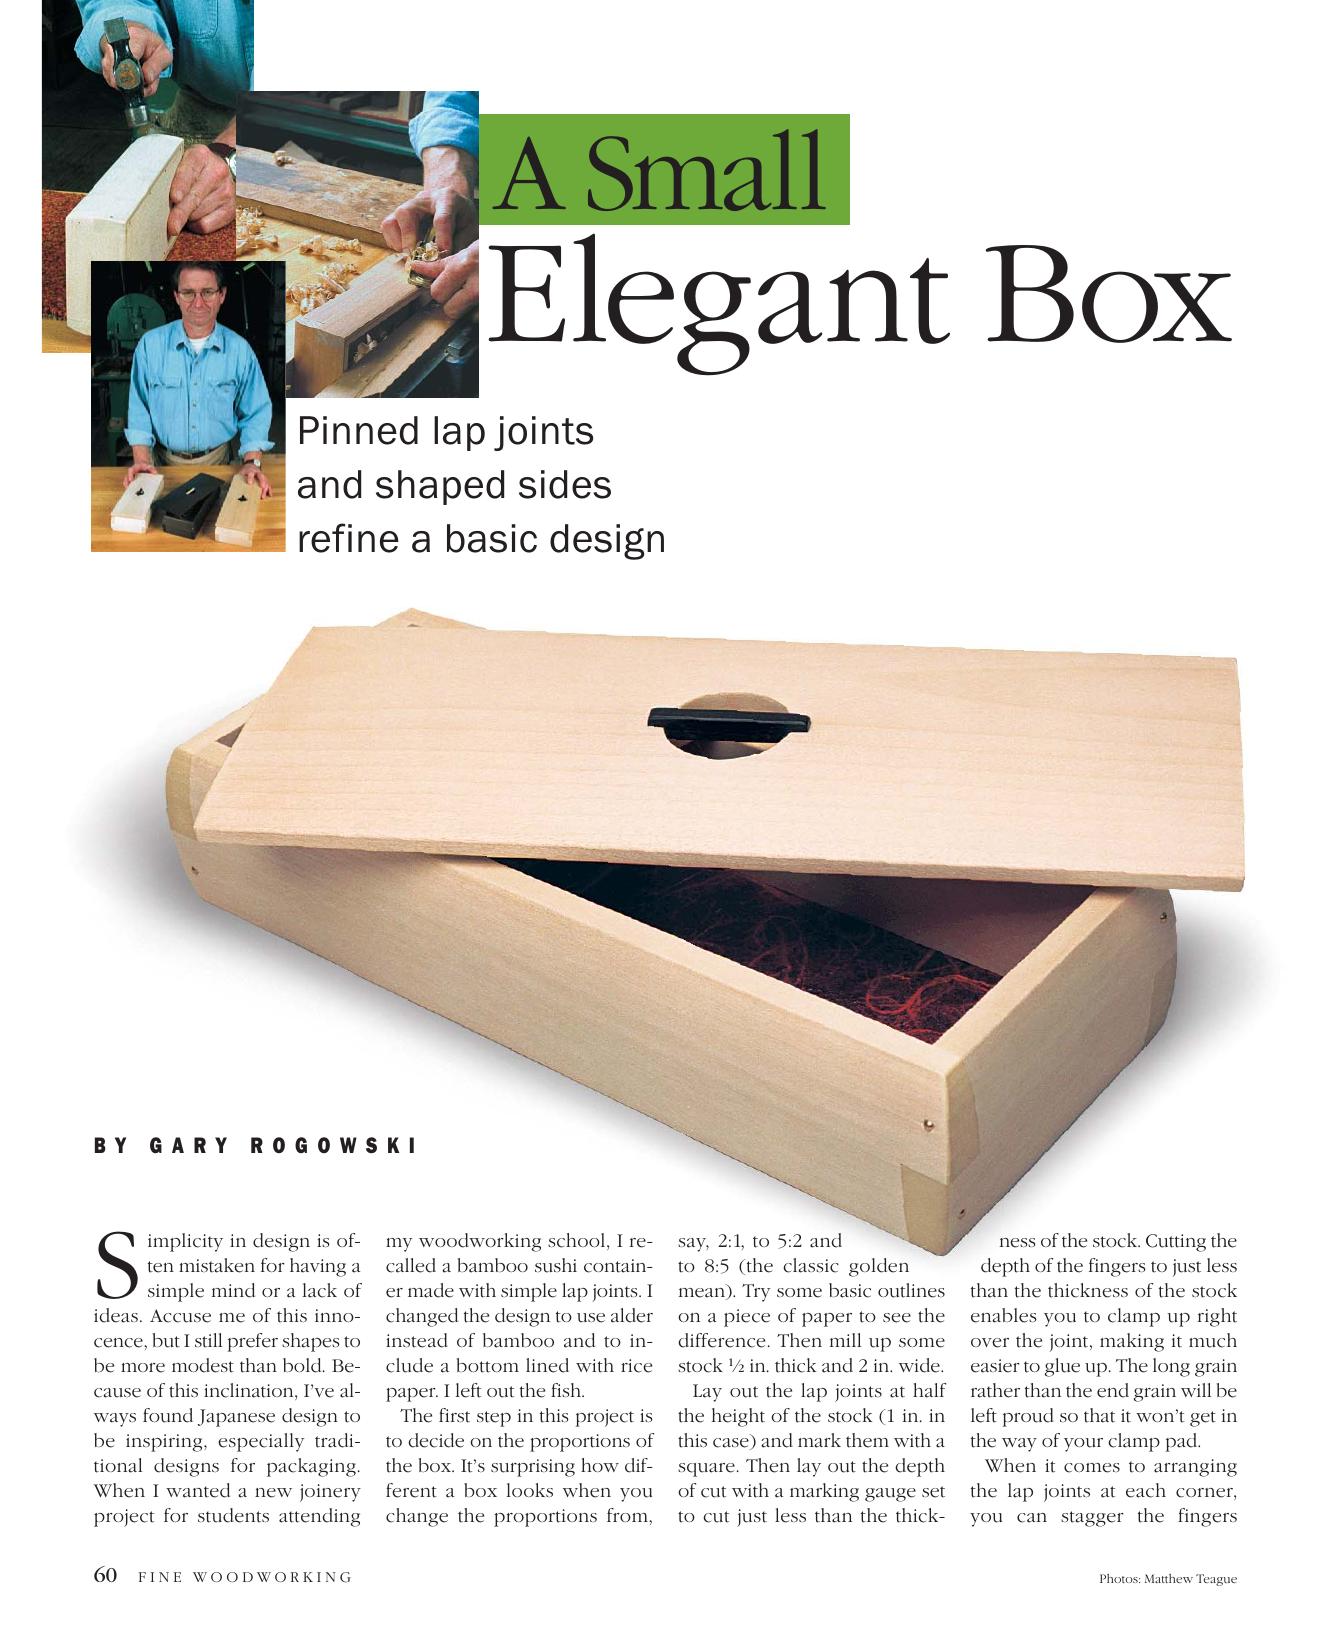 A Small Elegant Box by Gary Rogowski